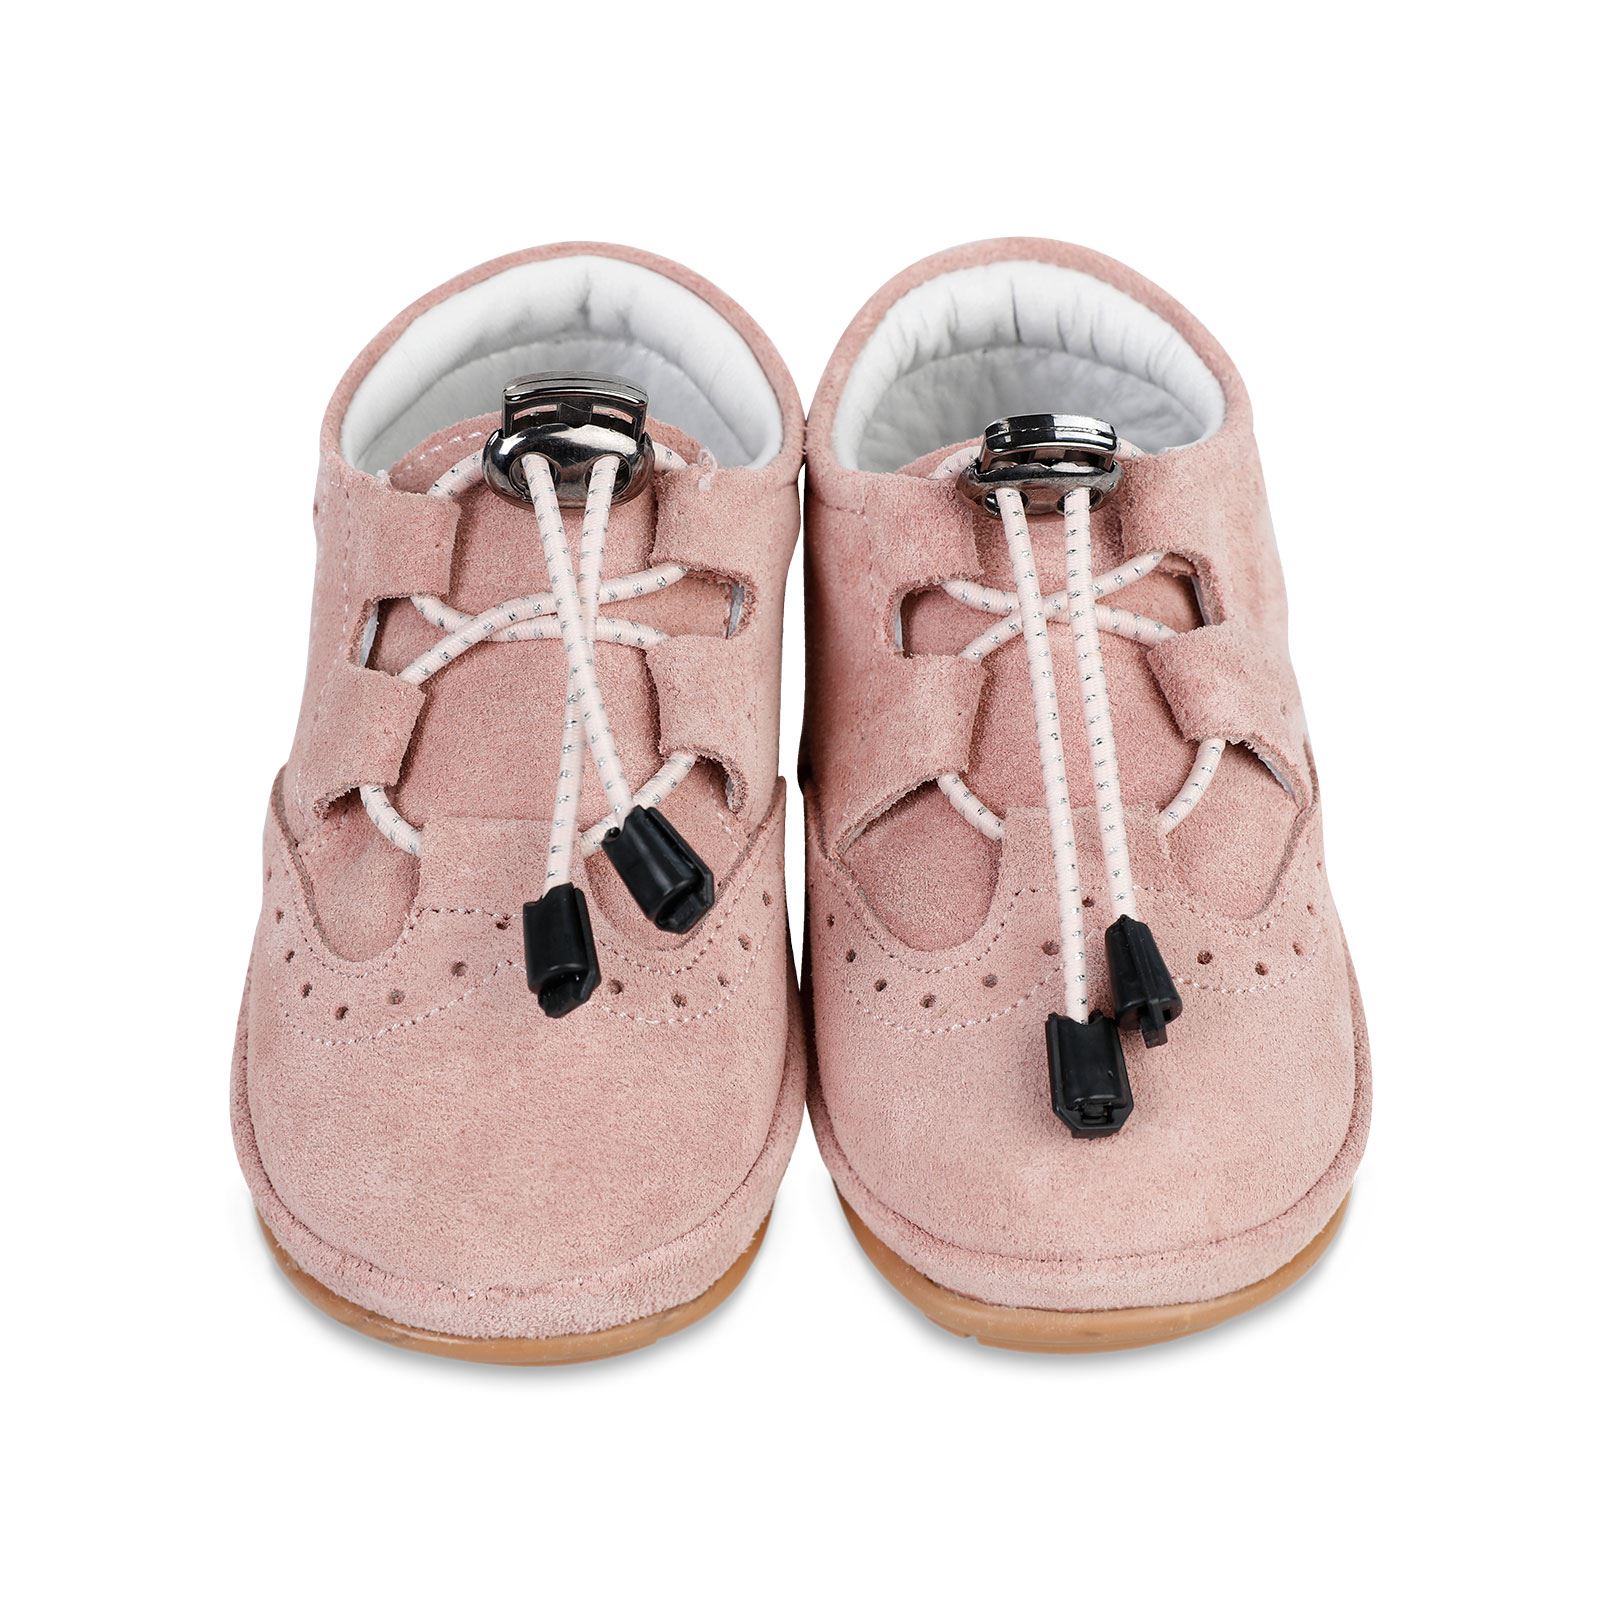 Civil Baby Kız Bebek İlk Adım Ayakkabı 19-21 Numara Pembe